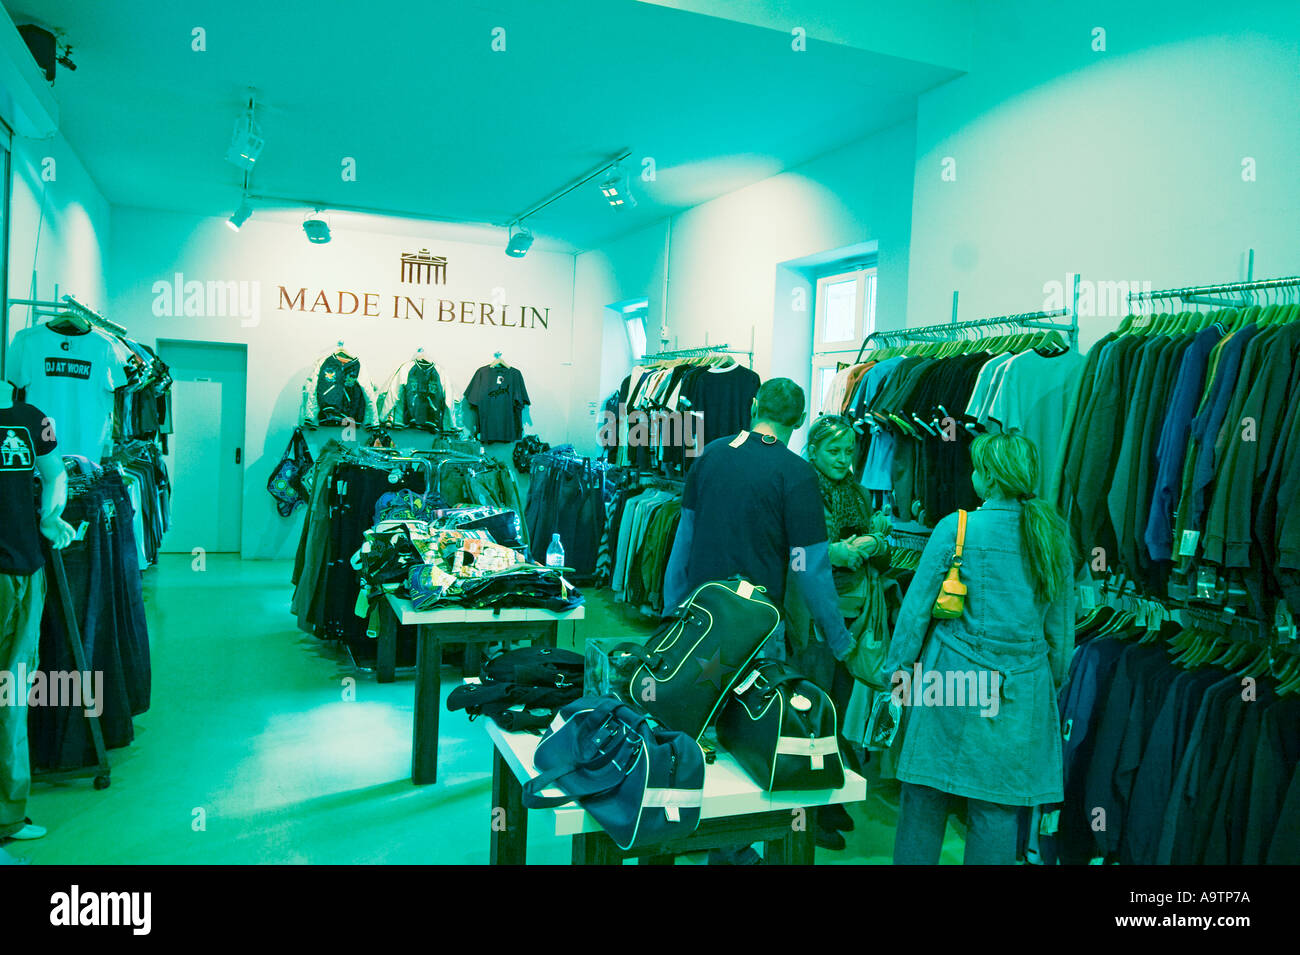 Berlin Fashion Shops in Berlin gemacht Stockfoto